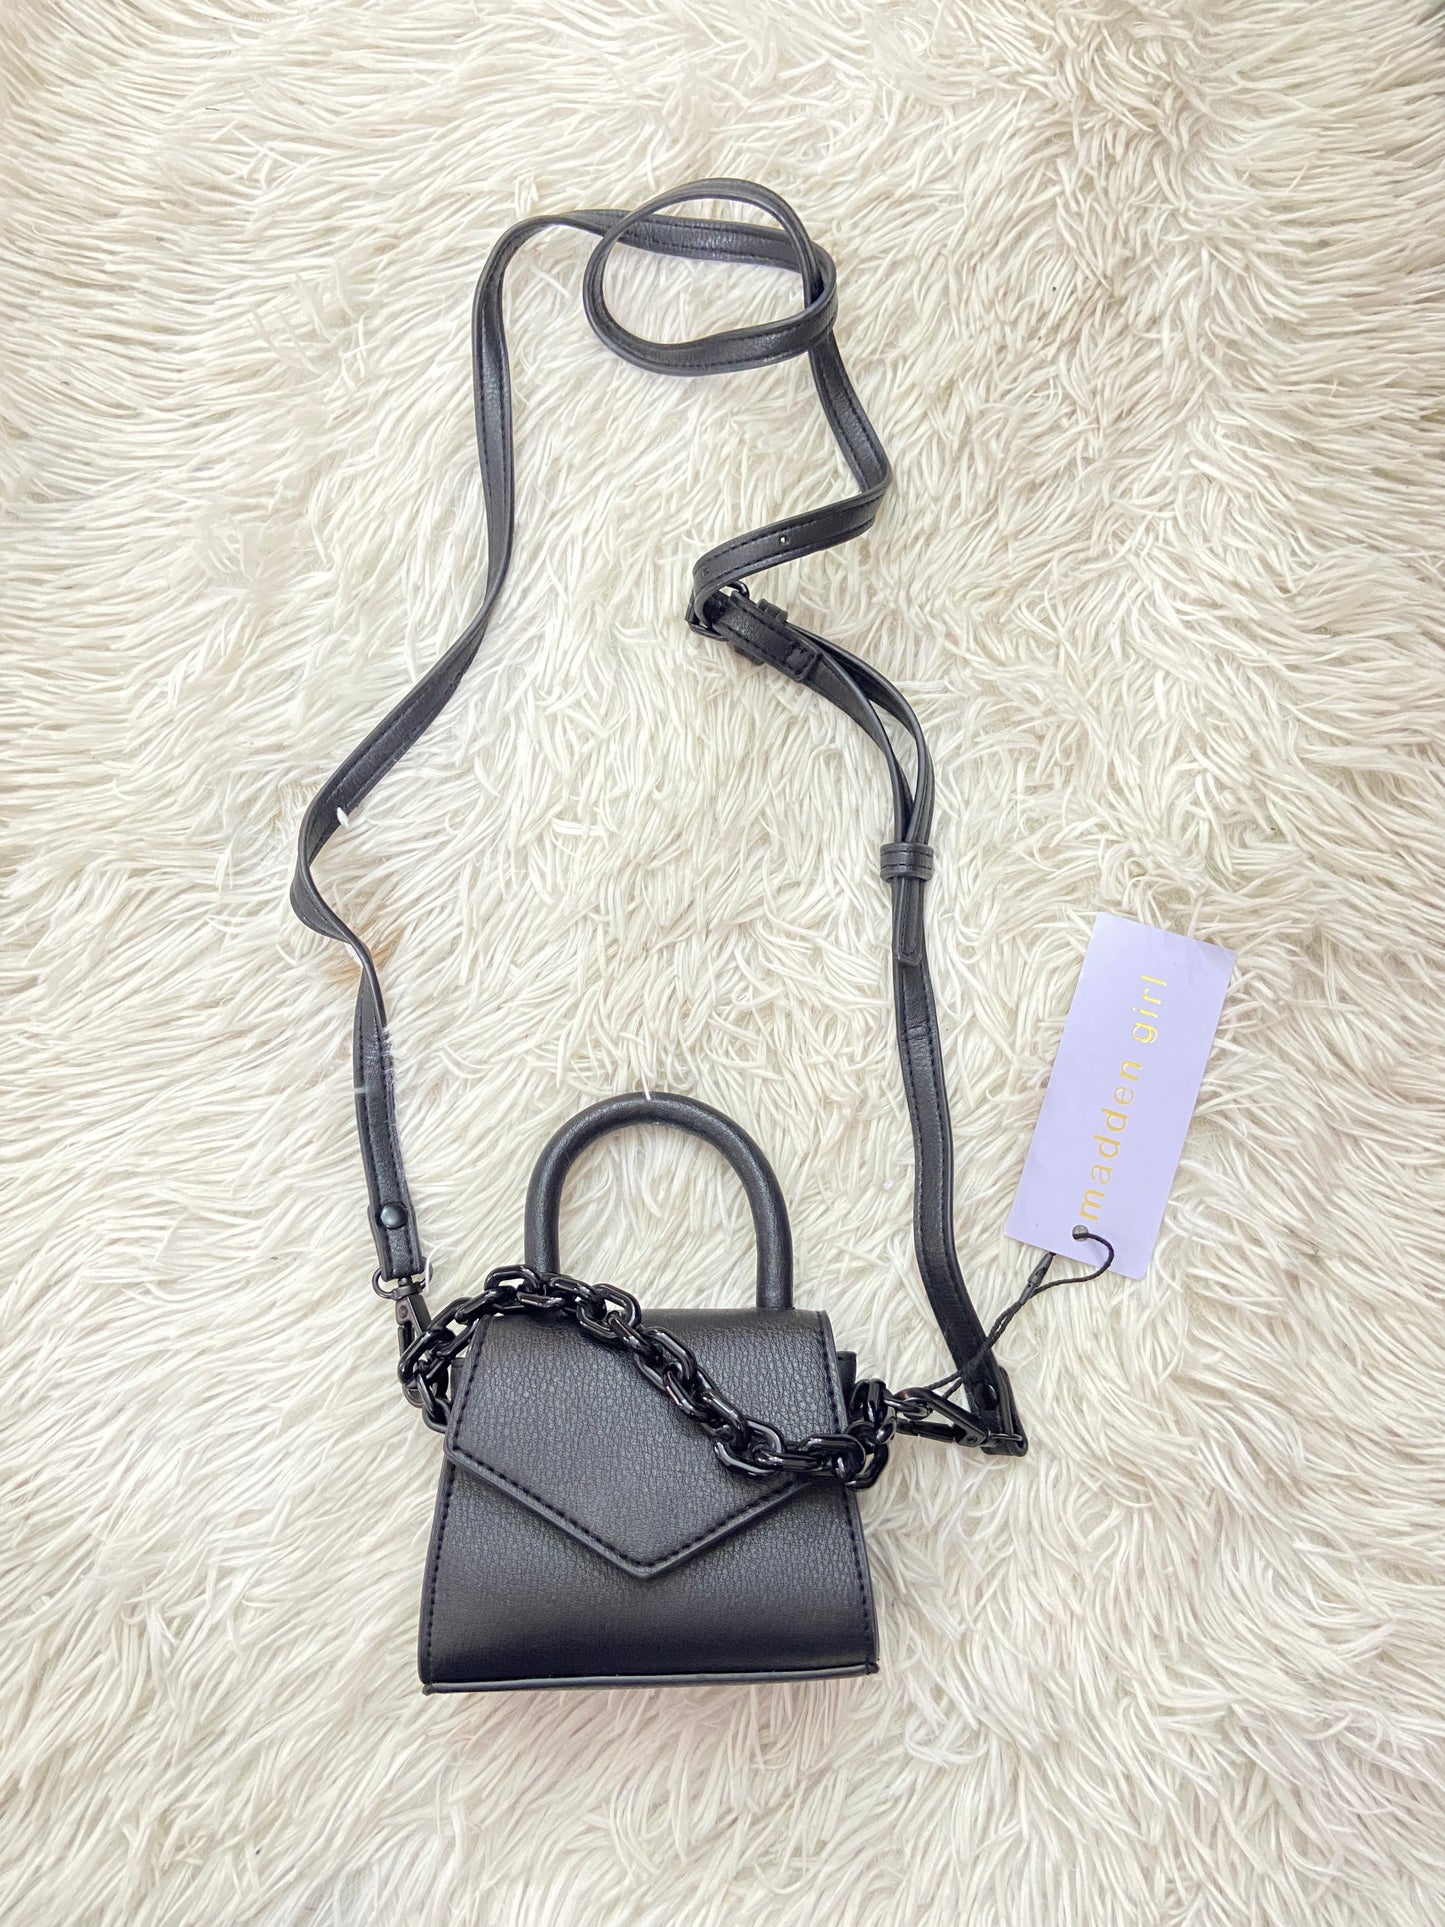 Mini cartera/ Crossbody Madden Girl original negra con cadena adicional en negro.